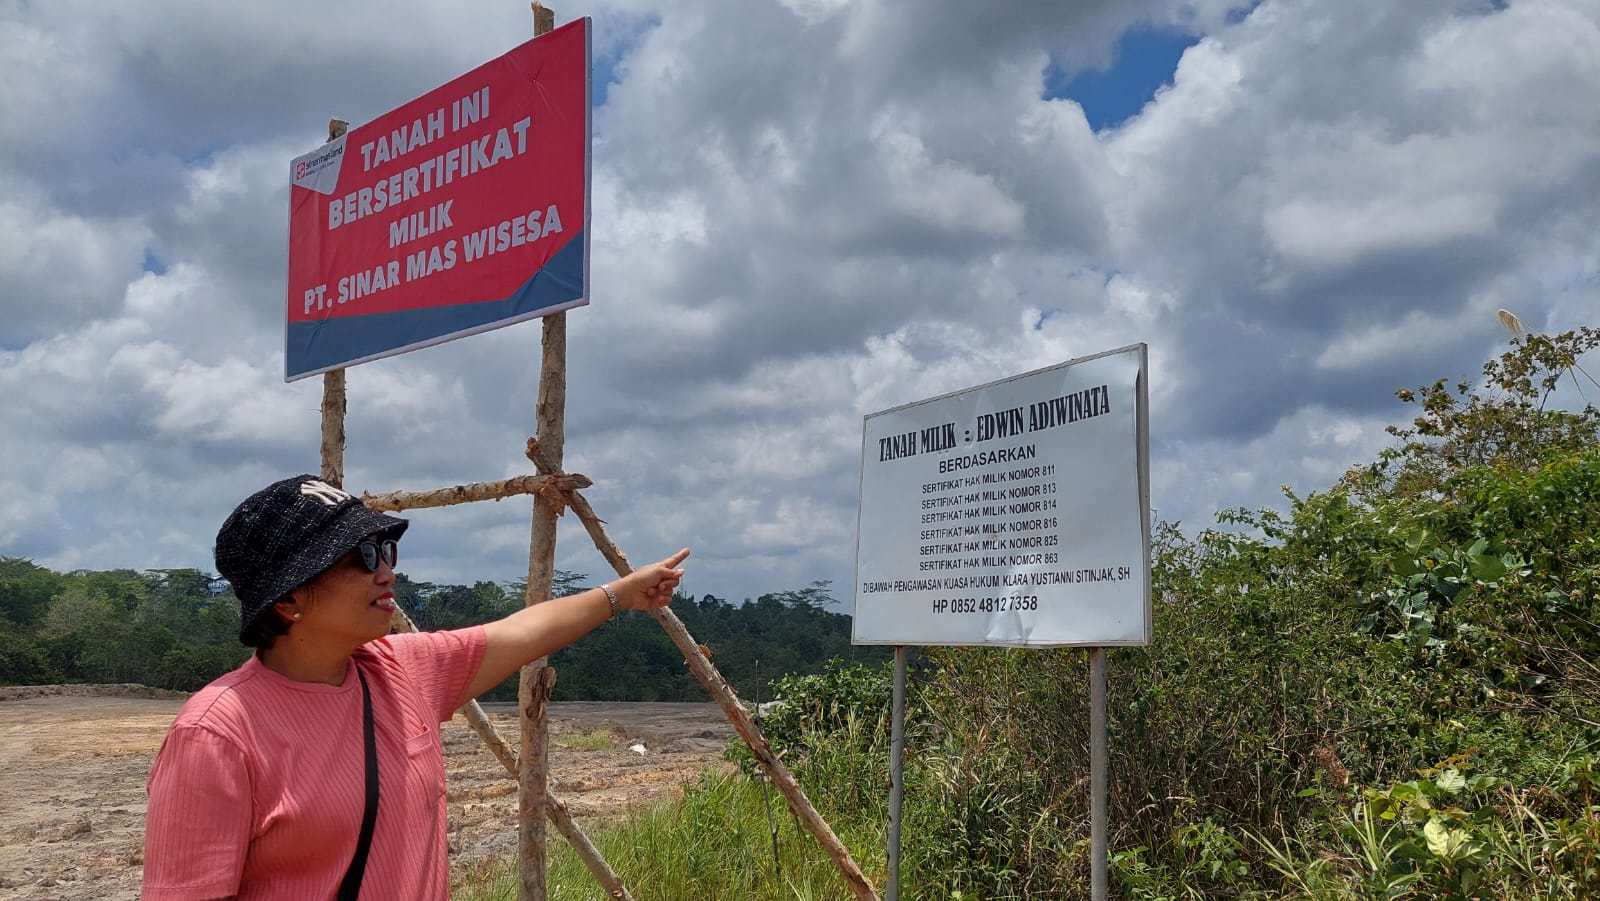 DPRD Akan Fasilitasi Konflik Antara Pemilik Tanah dengan Sinarmas Wisesa Pengembang Grand City Balikpapan